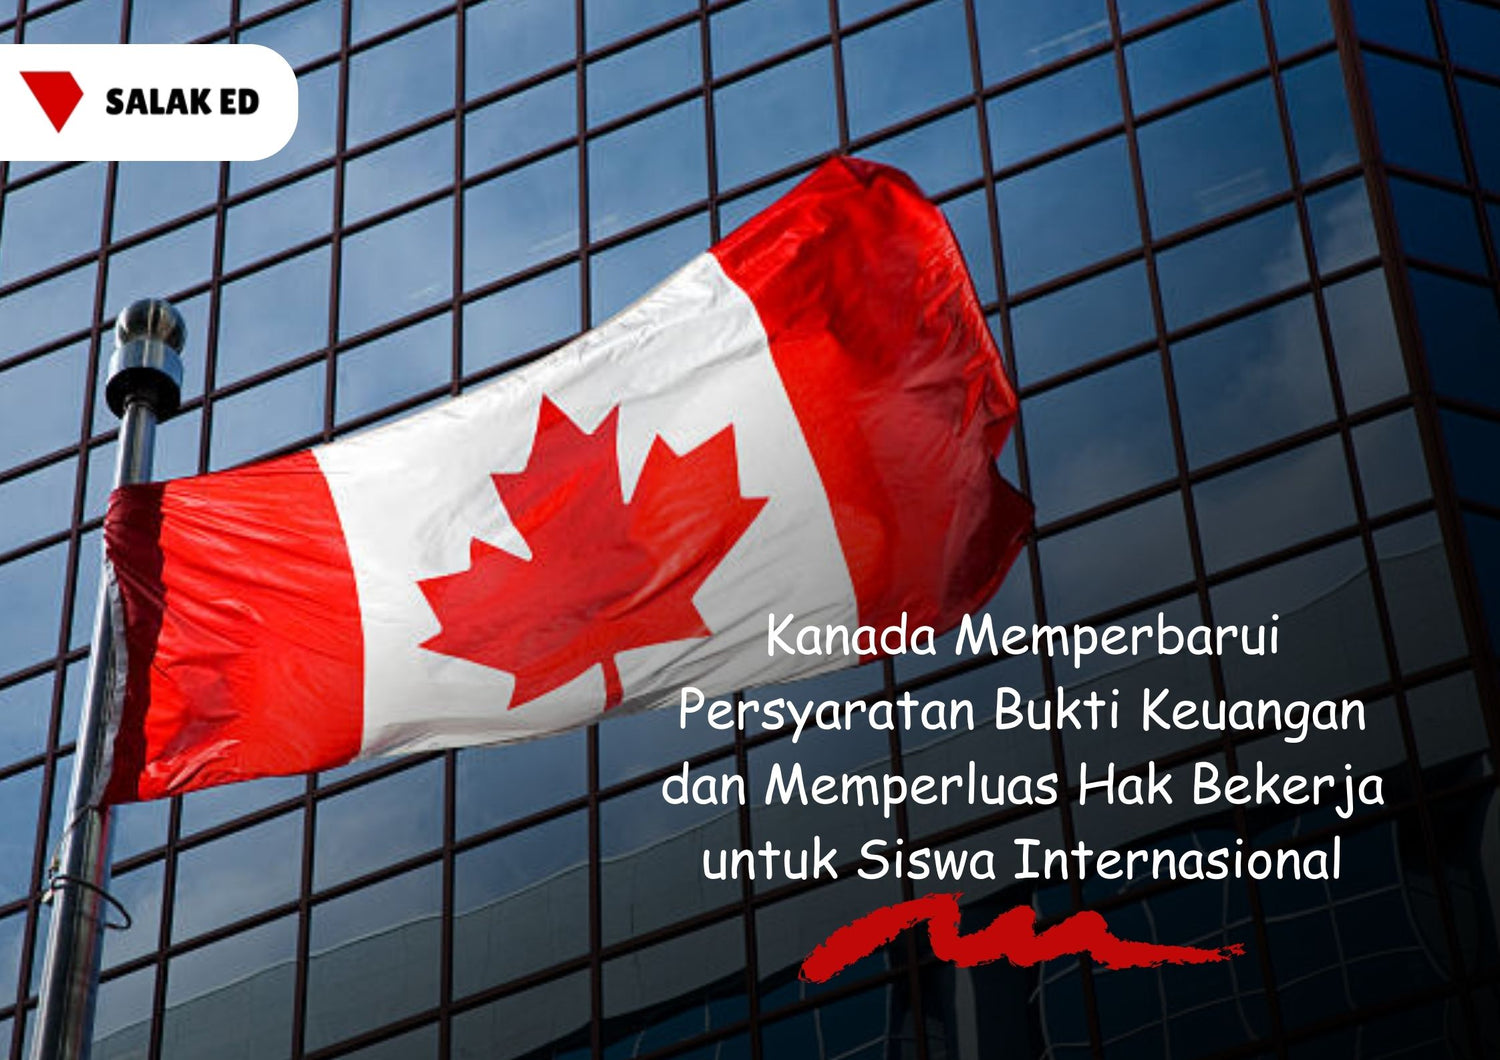 Kanada Memperbarui Persyaratan Bukti Keuangan dan Memperluas Hak Bekerja untuk Siswa Internasional